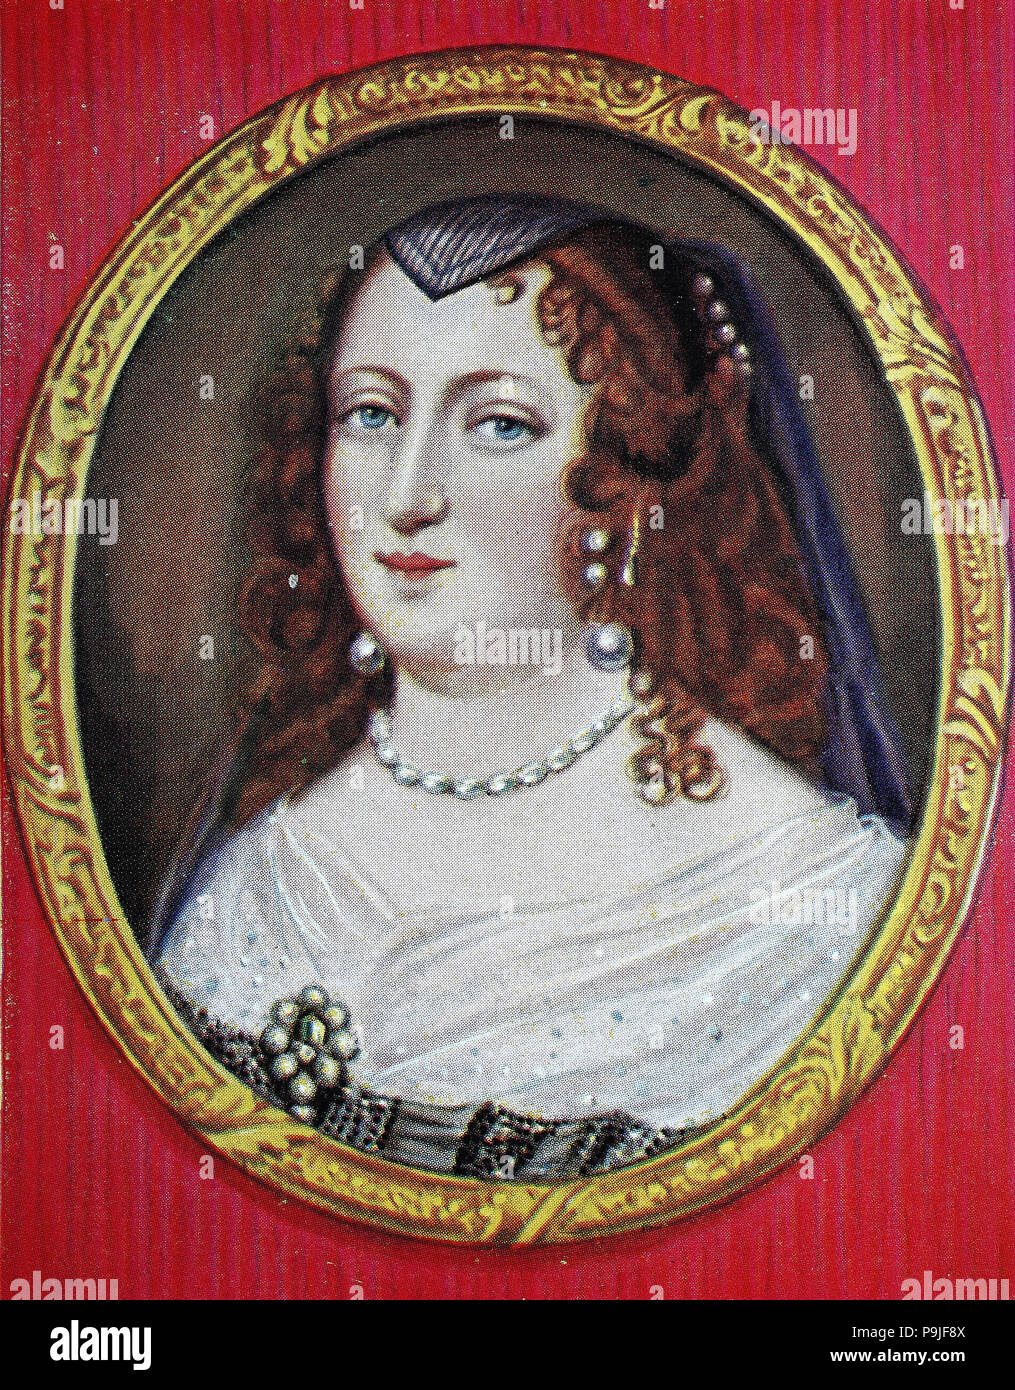 Anne d'Autriche, 22 septembre 1601 â€" 20 janvier 1666, une princesse espagnole de la maison de Habsbourg, a été reine de France en tant qu'épouse de Louis XIII, et régent de France pendant la minorité de son fils, Louis XIV, de 1643 à 1651, l'amélioration numérique reproduction d'une estampe originale de l'année 1900 Banque D'Images